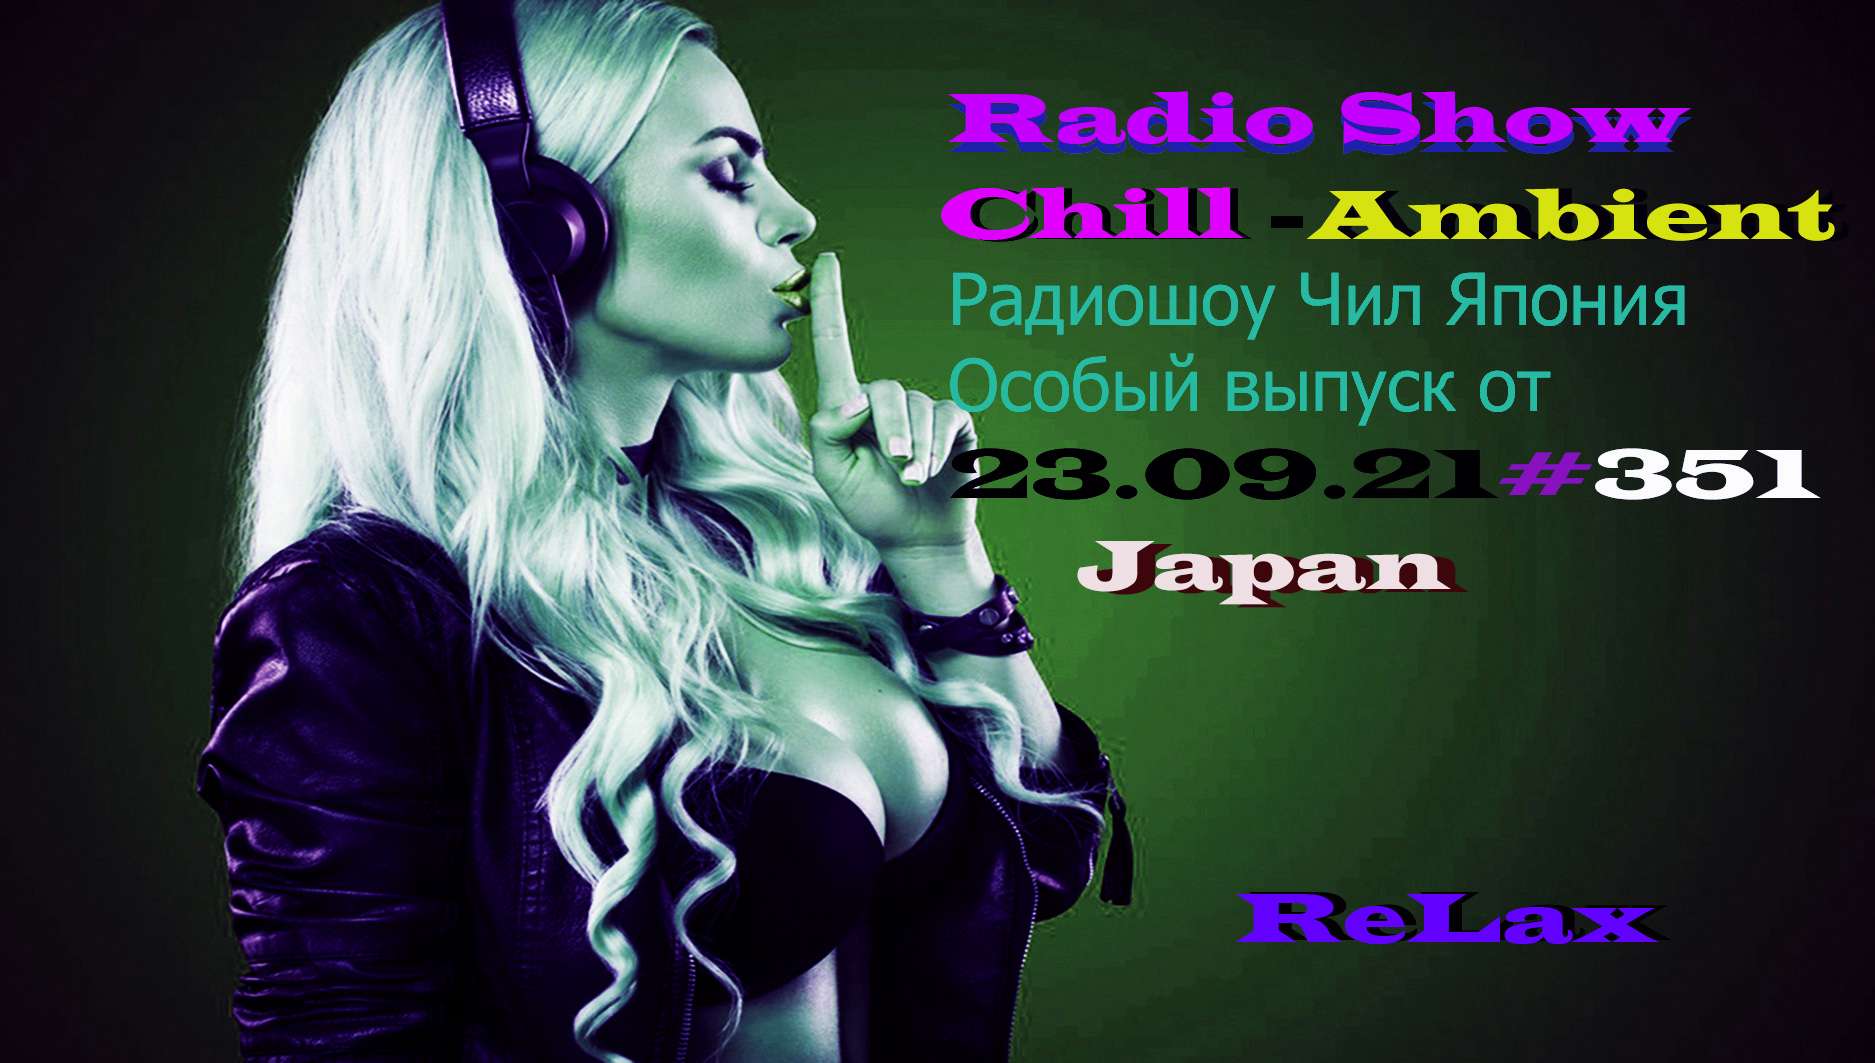 Radio Show Chill Ambient Чилаут Радиошоу Чил Япония Особый выпуск от 23.09.21#351, #22 .mp4